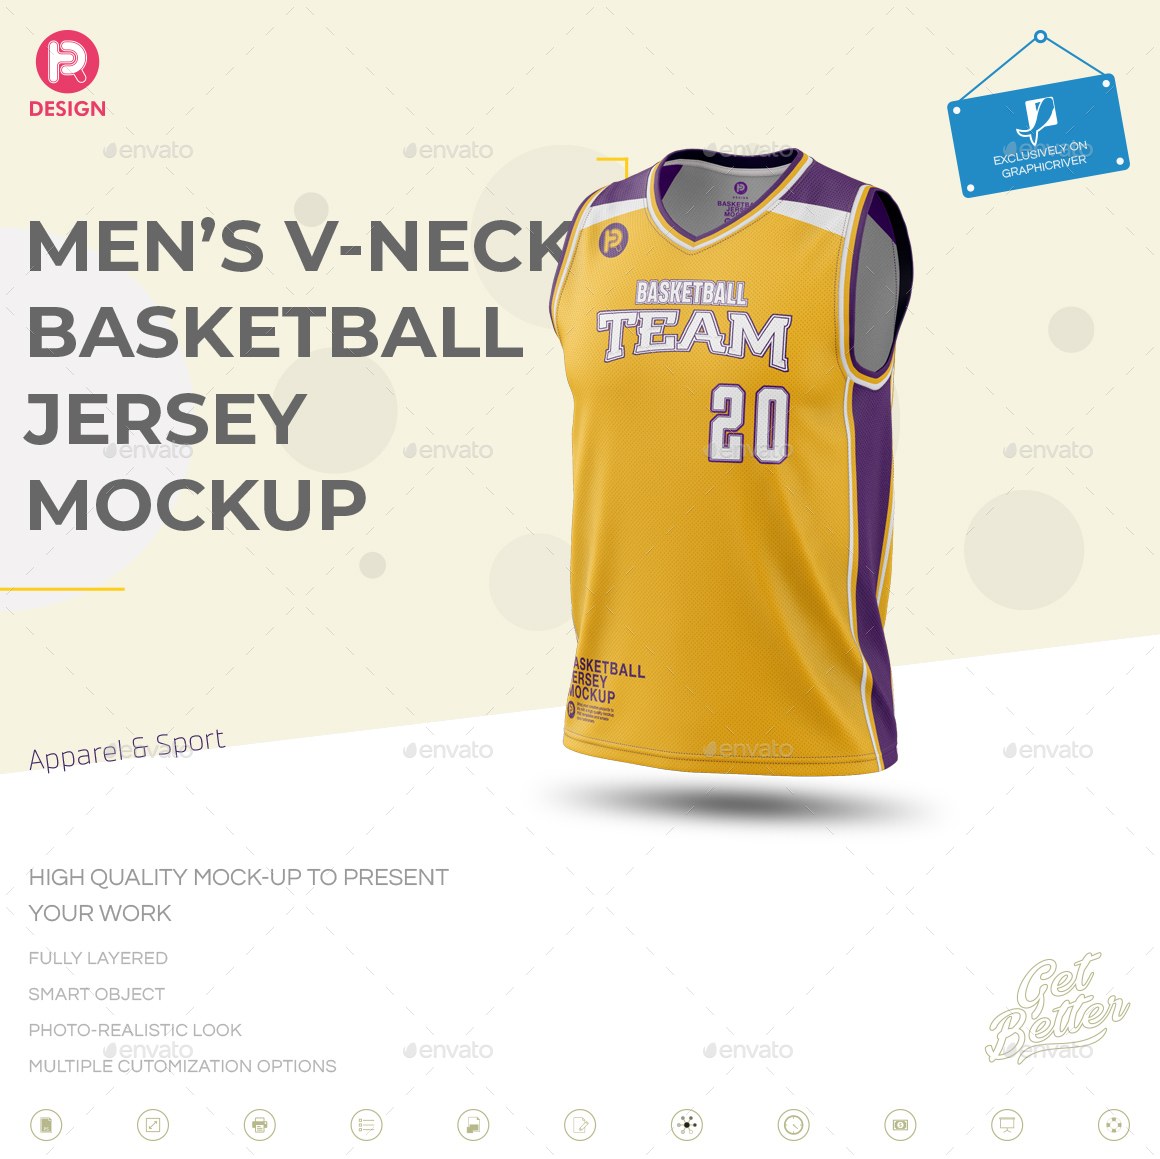 Download Men's V-Neck Basketball Jersey Mockup by TRDesignme ...